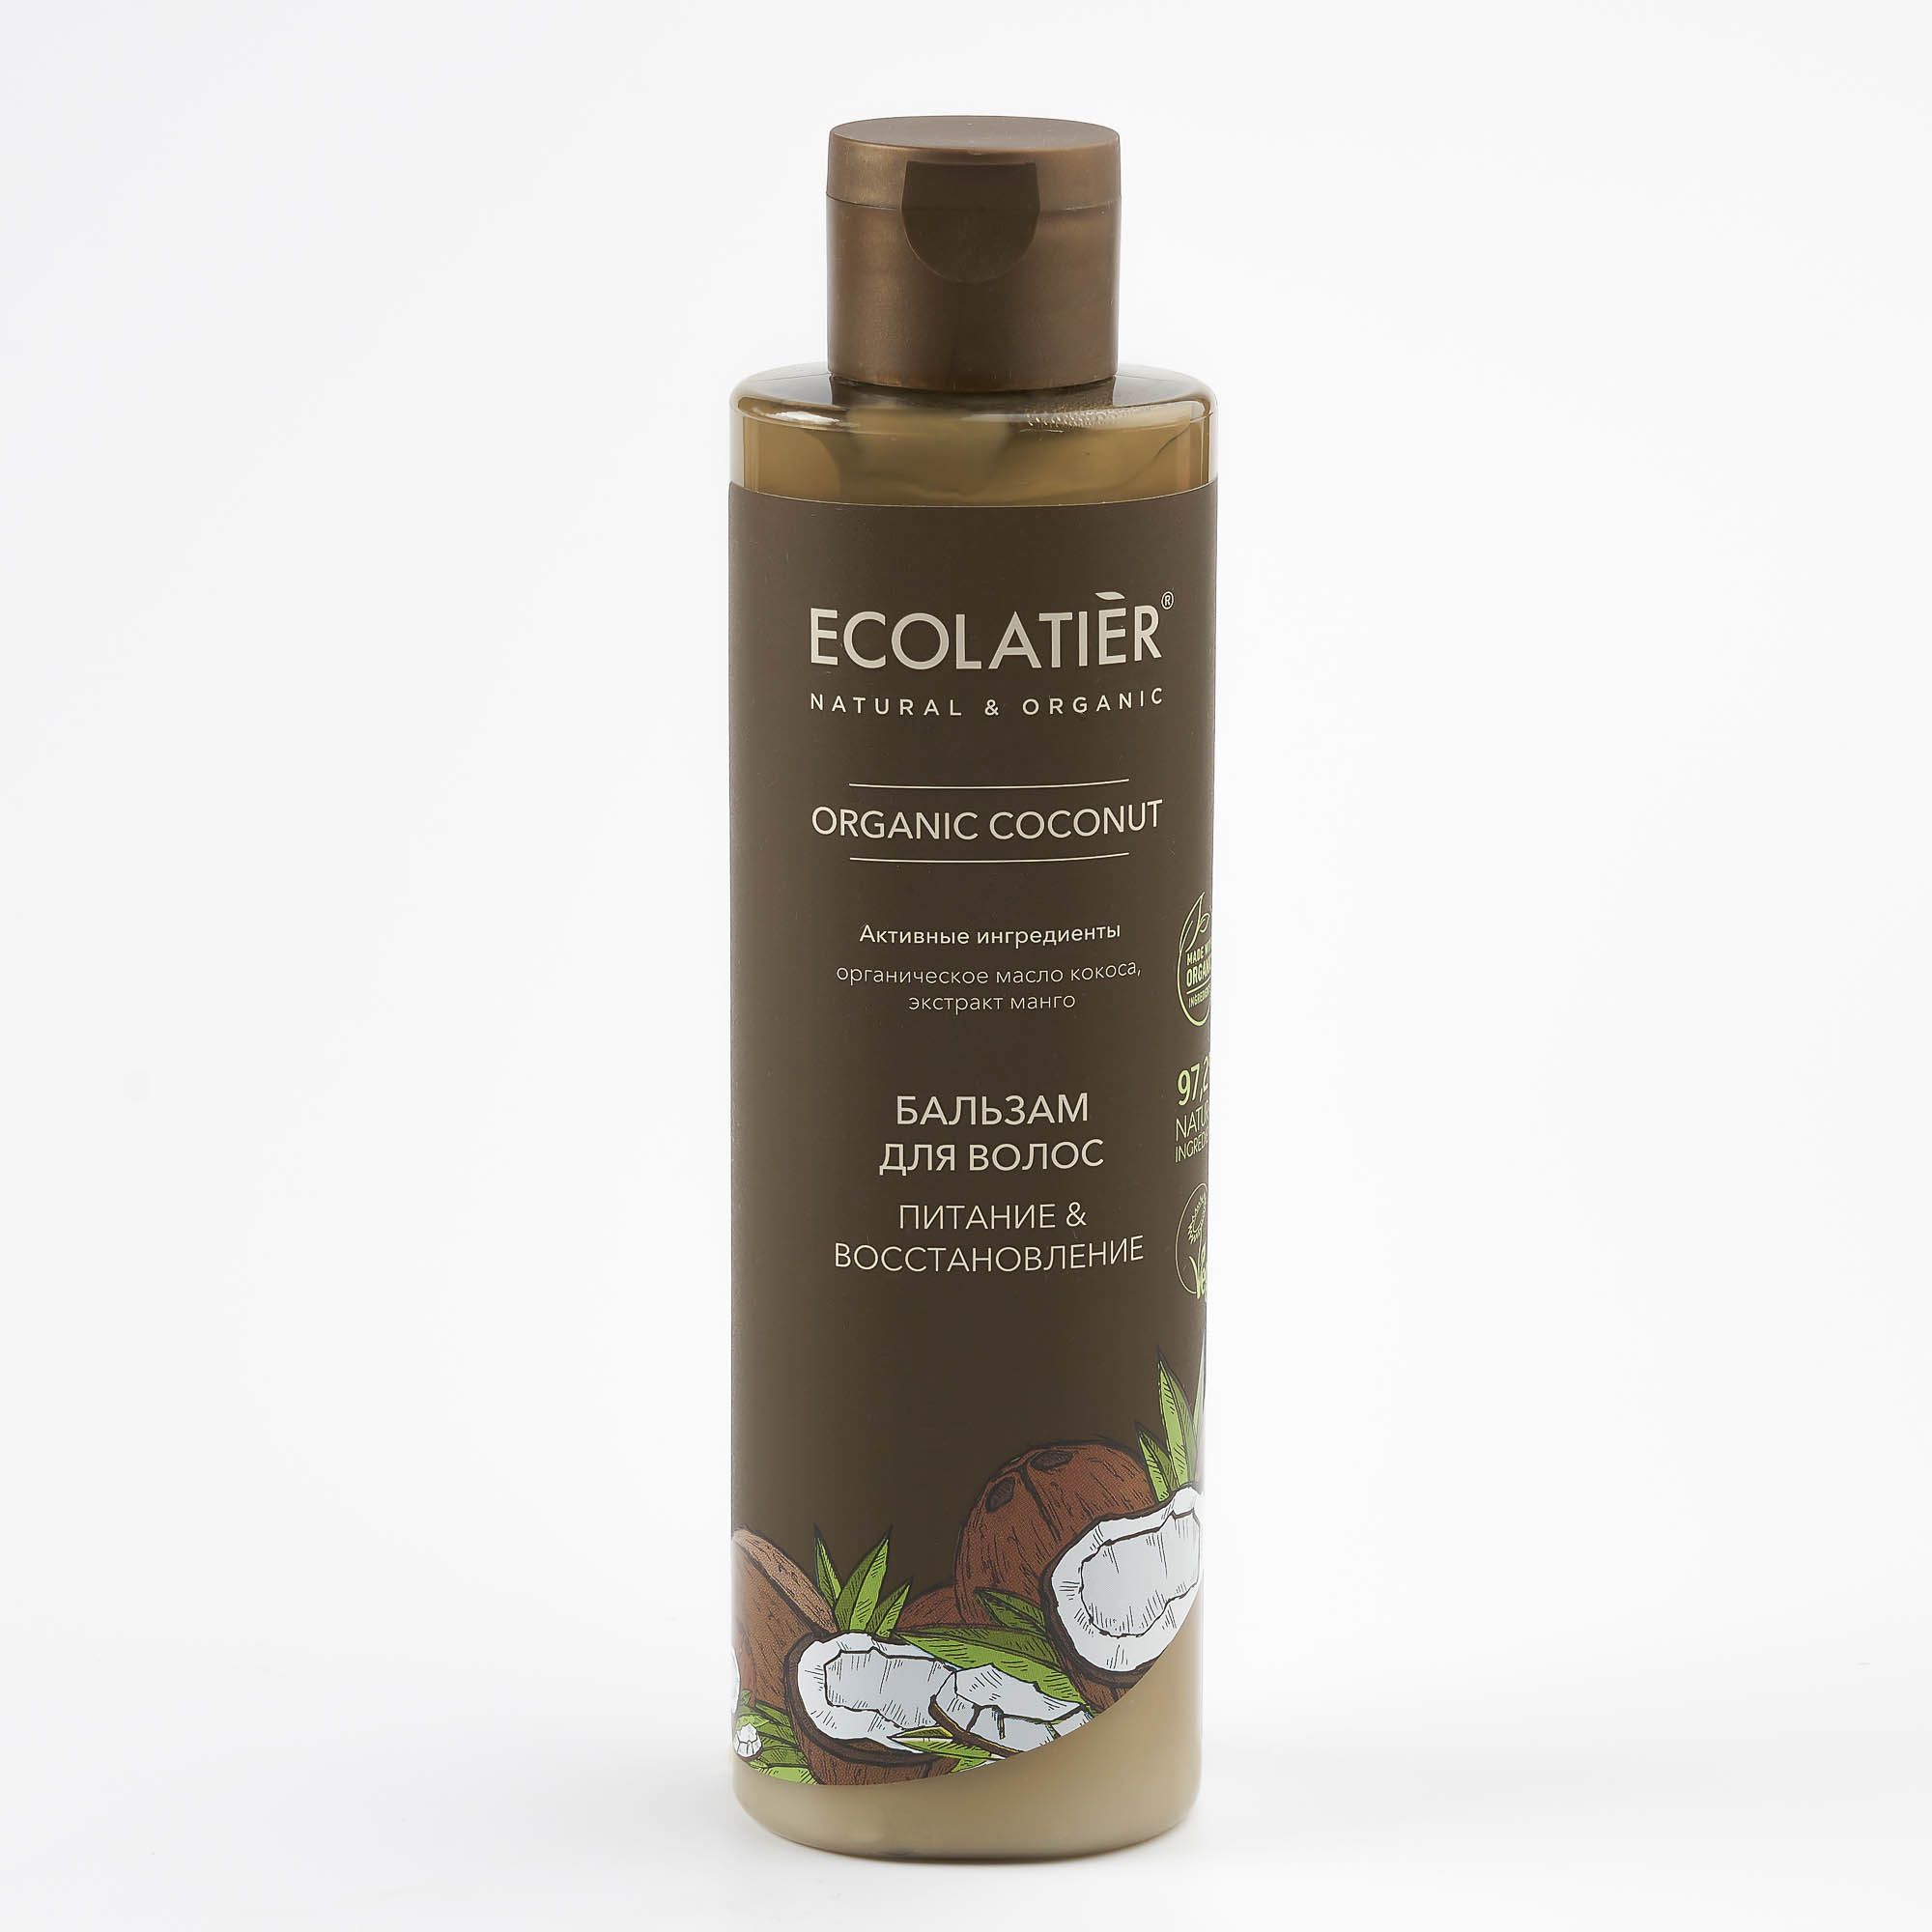 Бальзам для волос Ecolatier Питание и восстановление Organic Coconut 250 мл